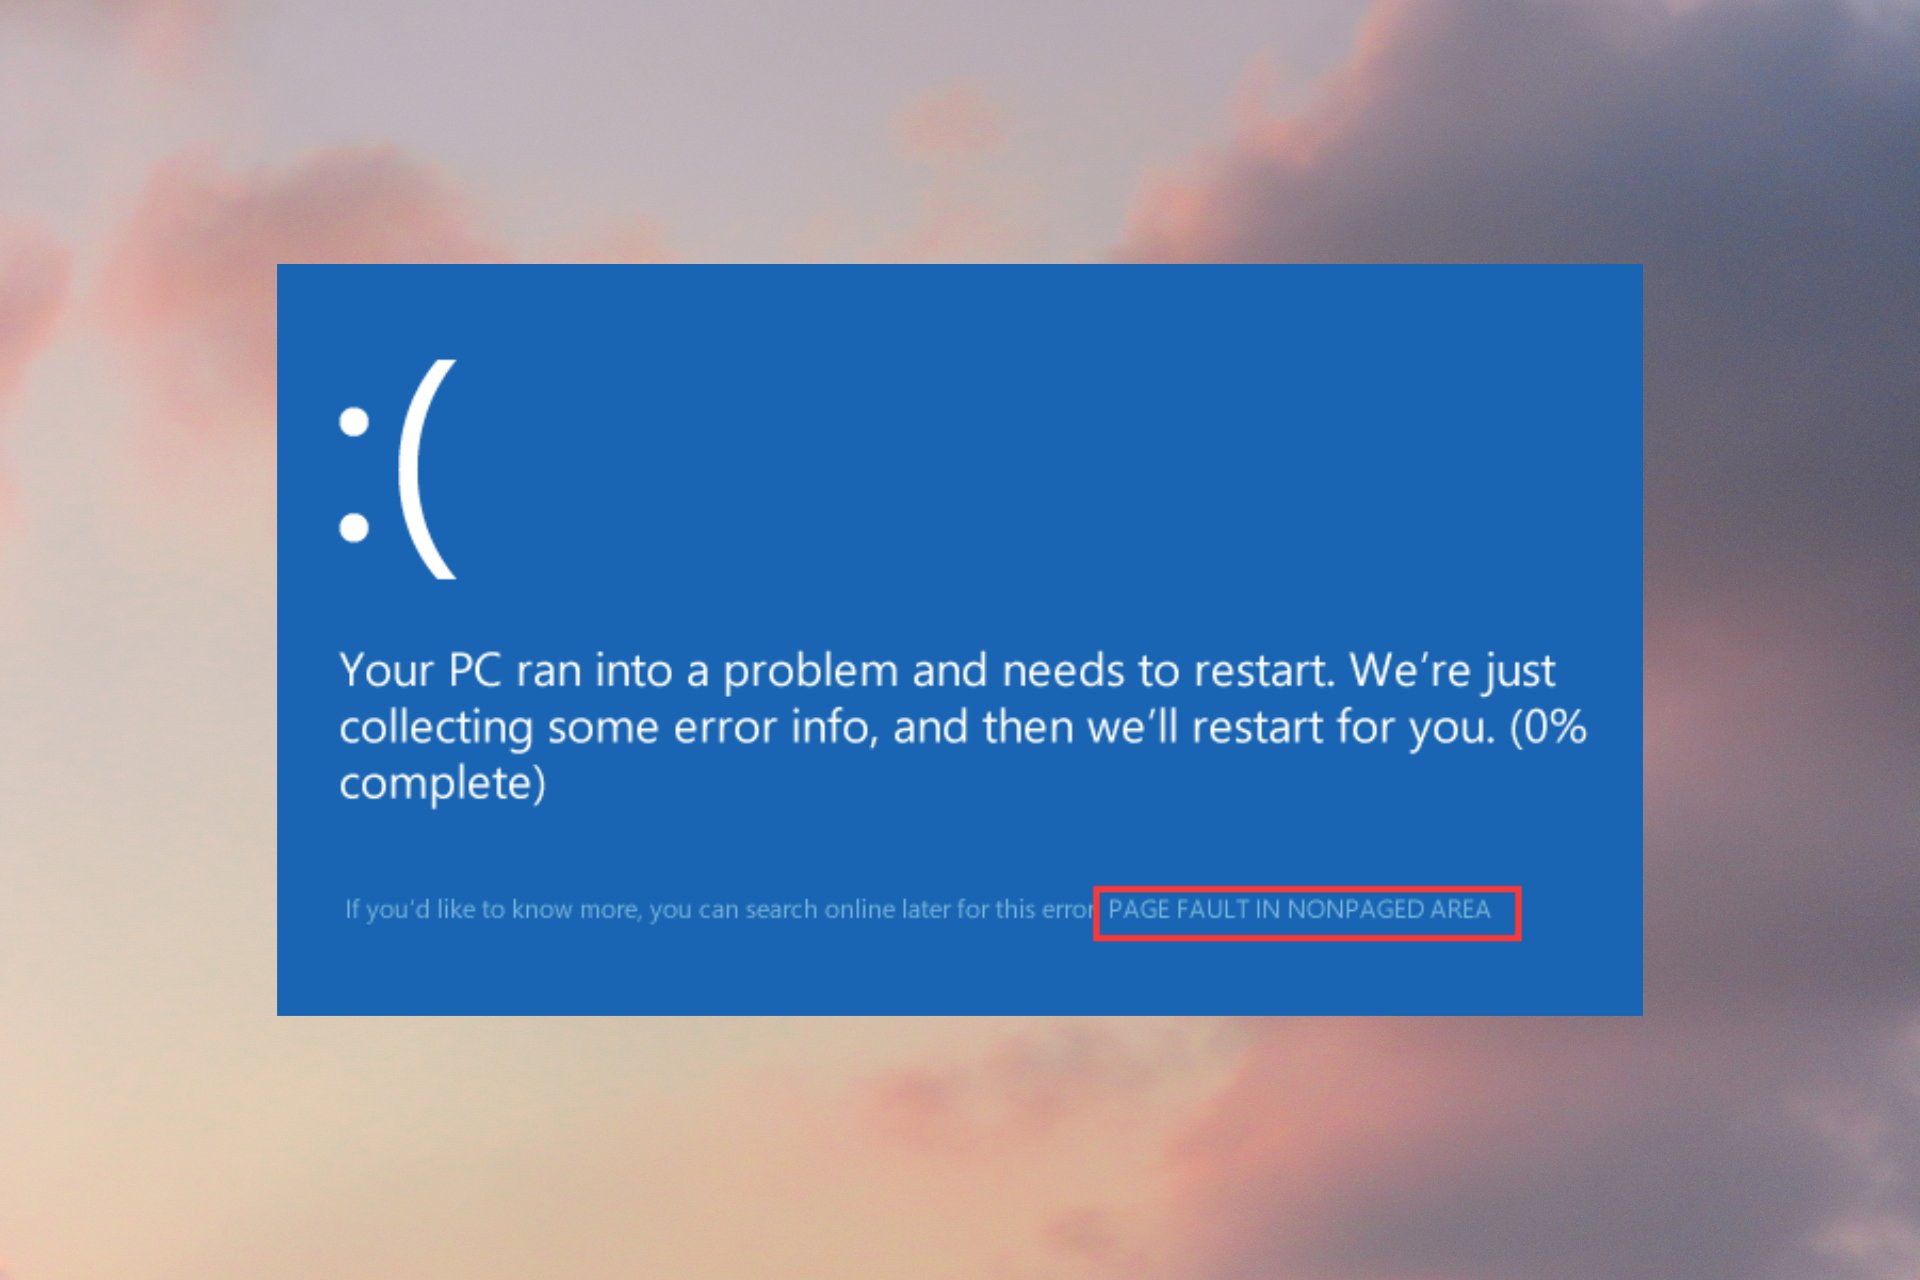 Cómo corregir un error de página en un área no paginada en Windows 10